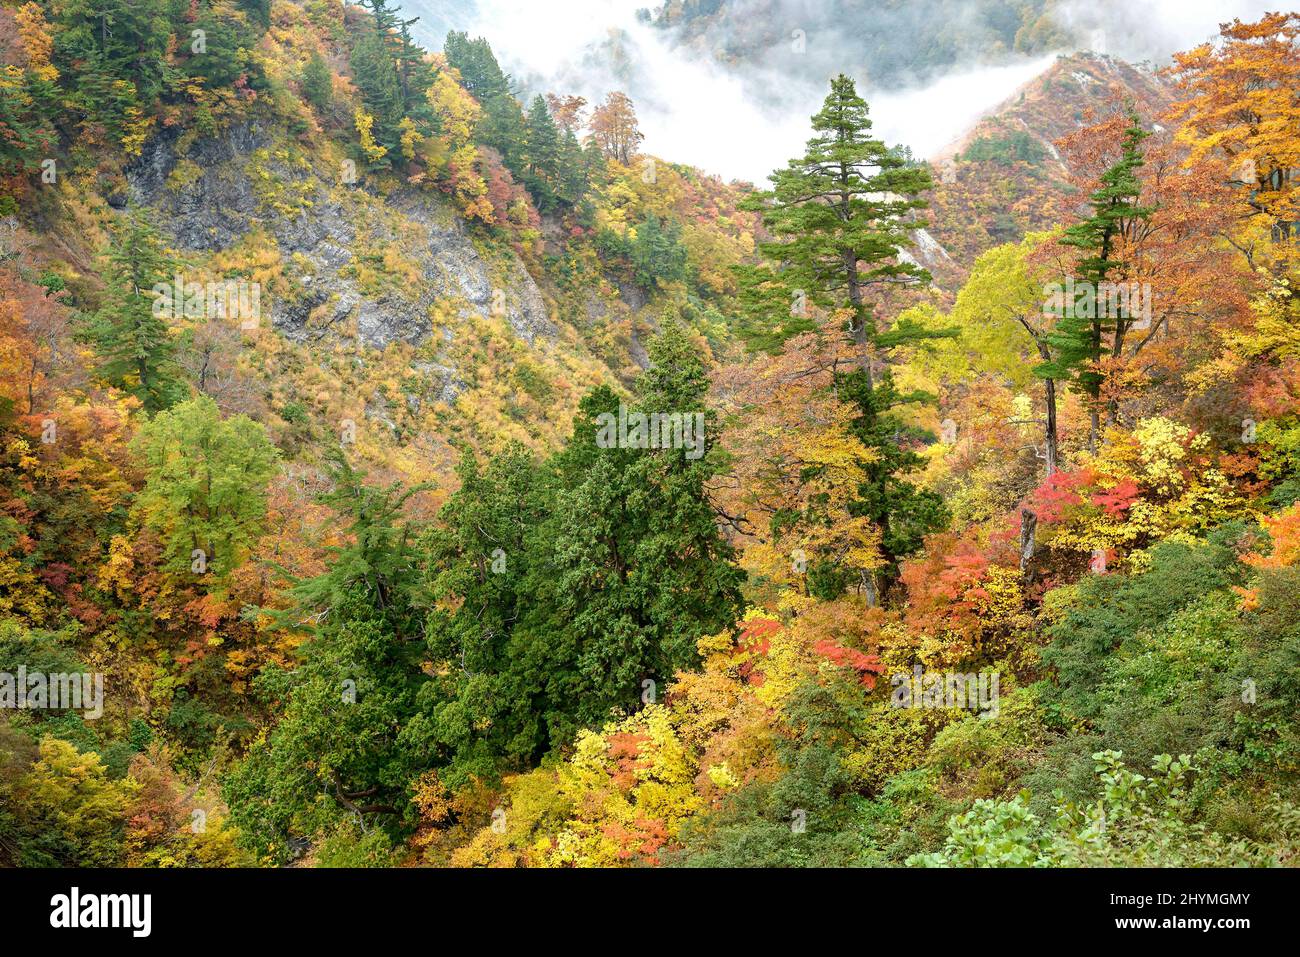 Japanese white pine (Pinus parviflora), at wild state, Japan, Honshu, Hakusan National Park Stock Photo